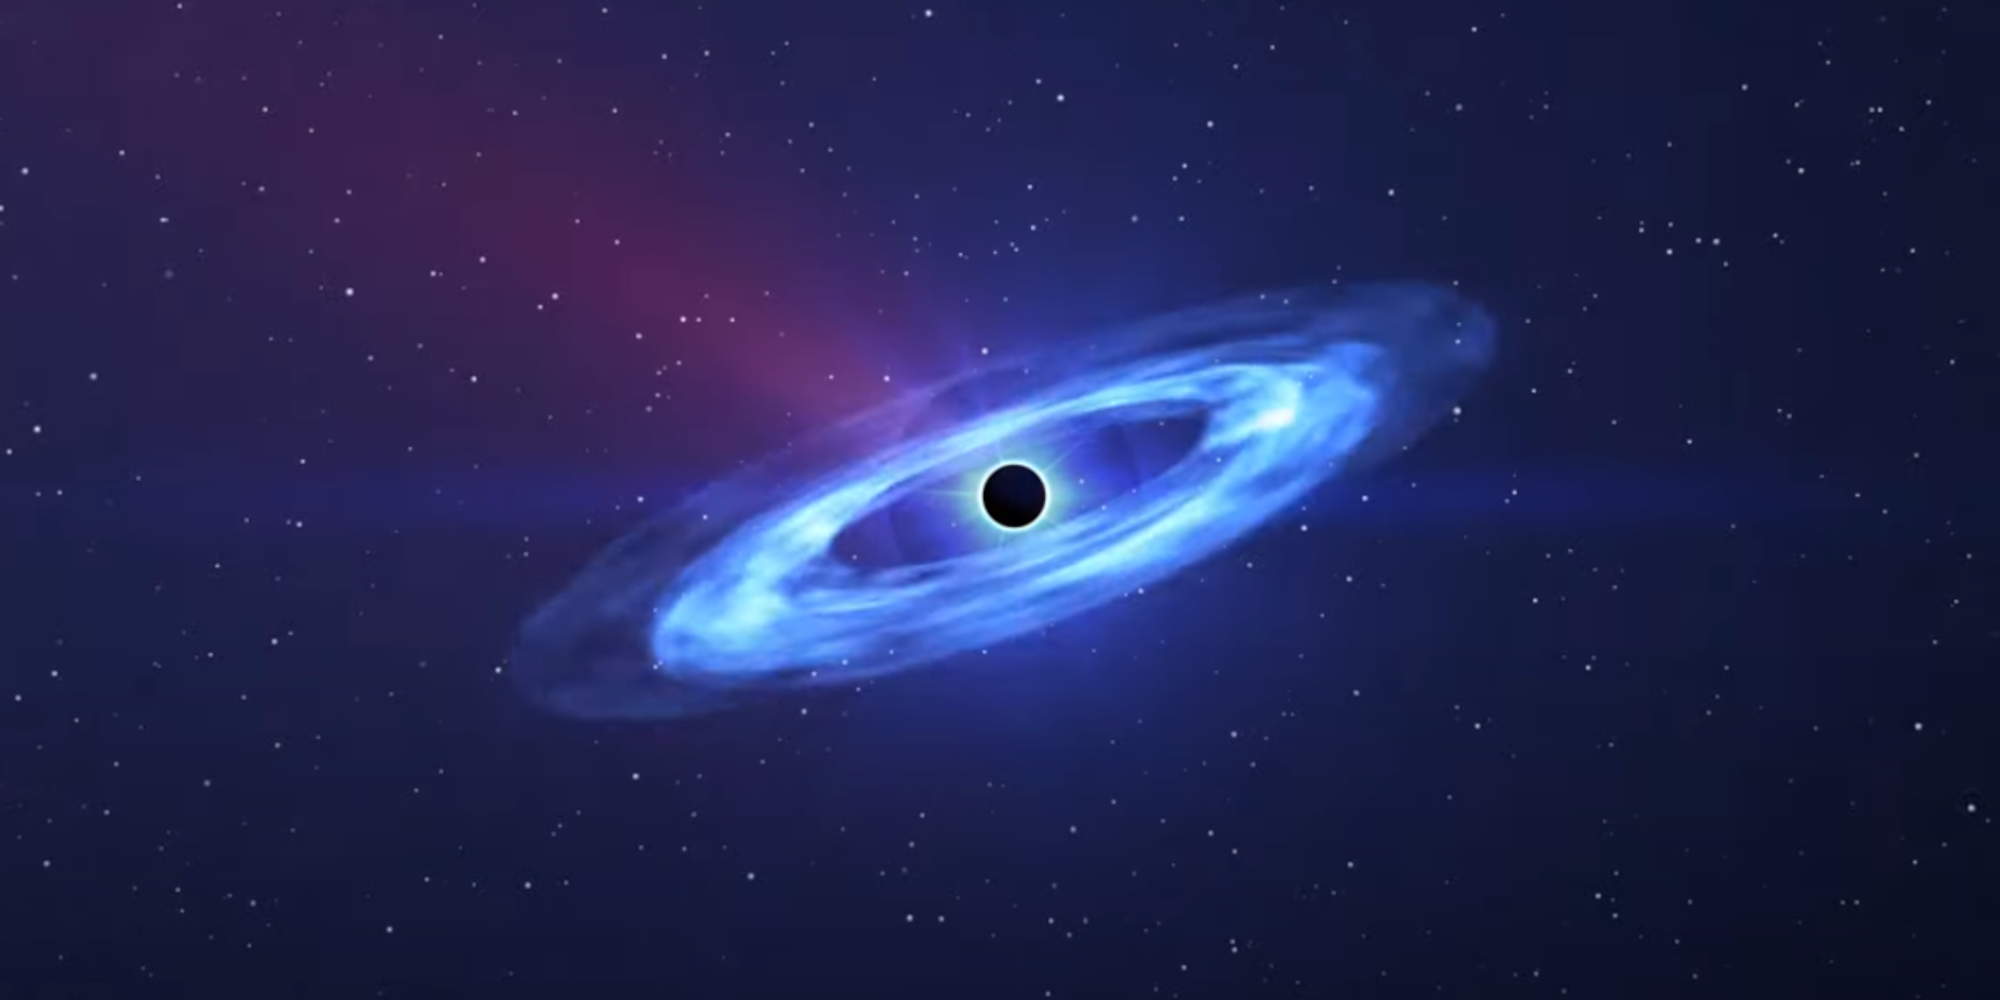 Πώς απεικονίζεται η μαύρη τρύπα που εντόπισαν οι επιστήμονες